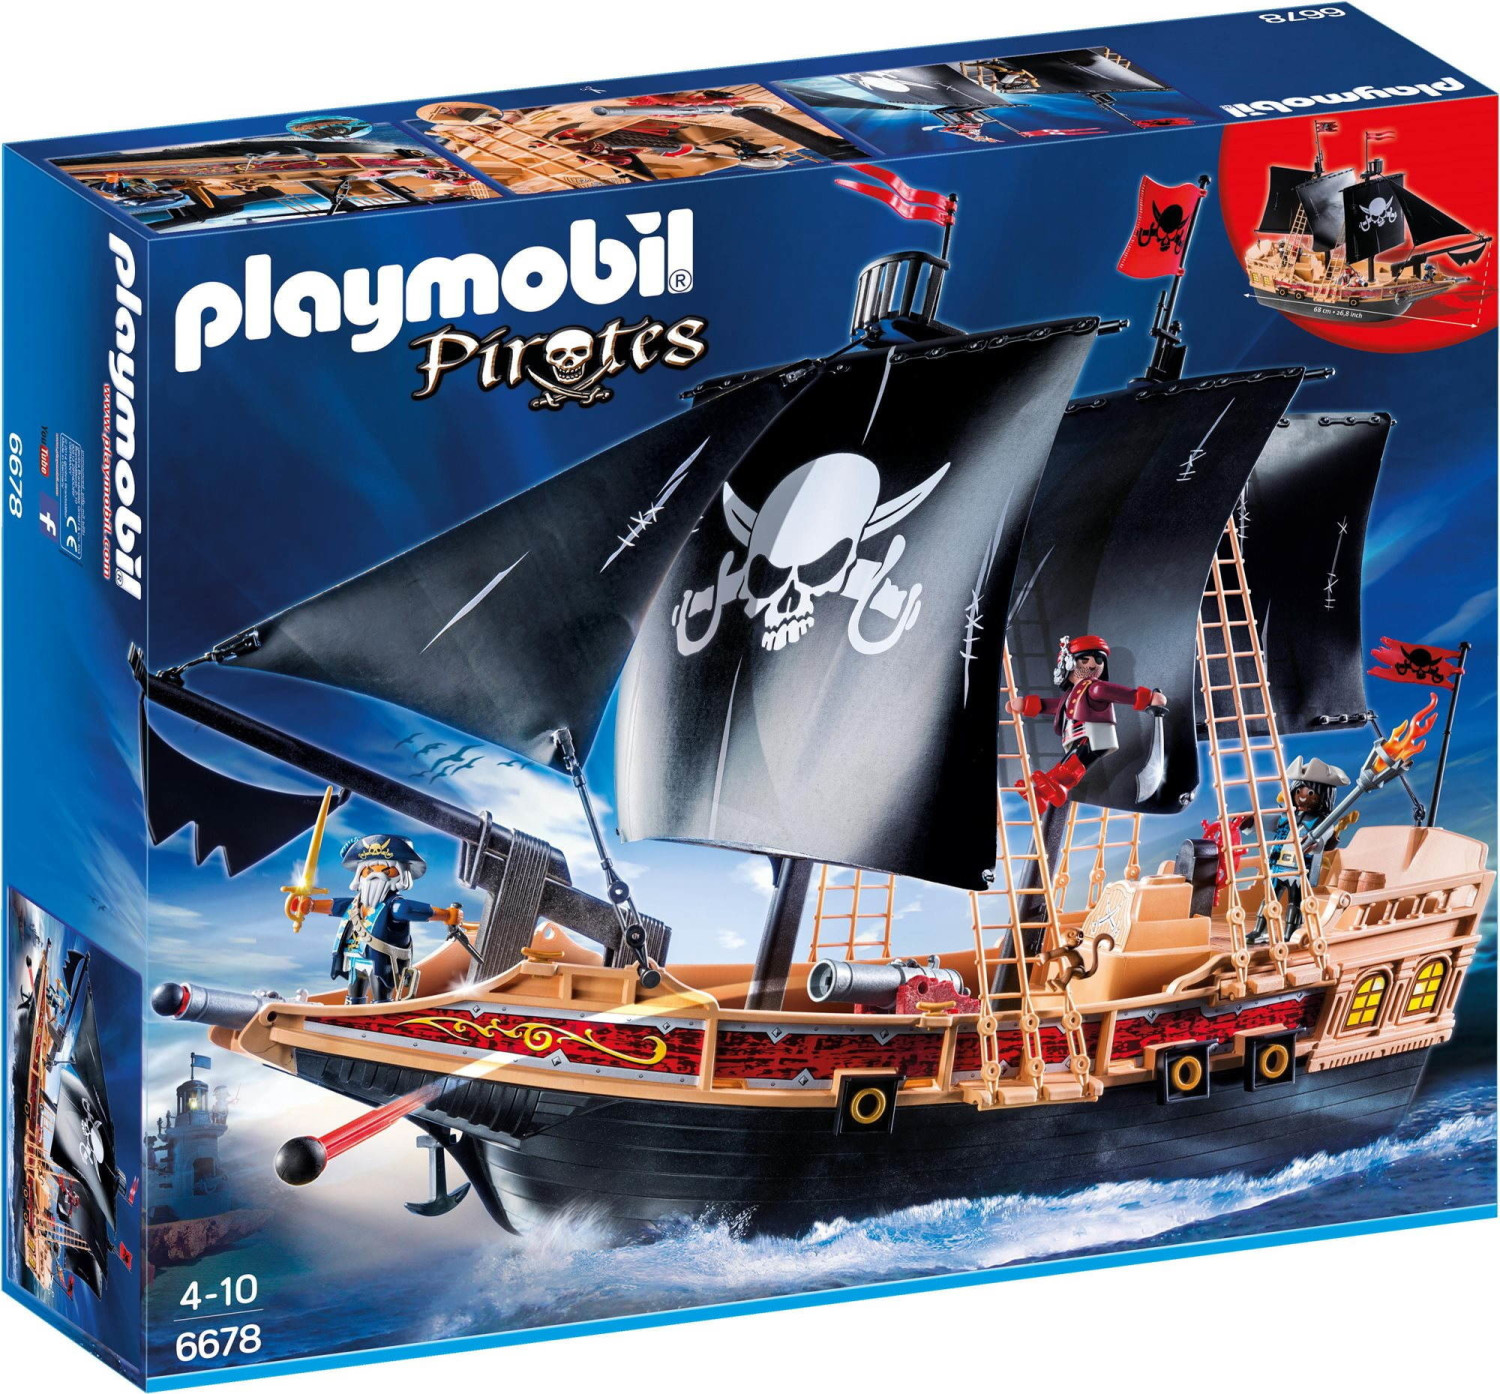 Playmobil pirates 2021 - playmobil bateau pirate collection 